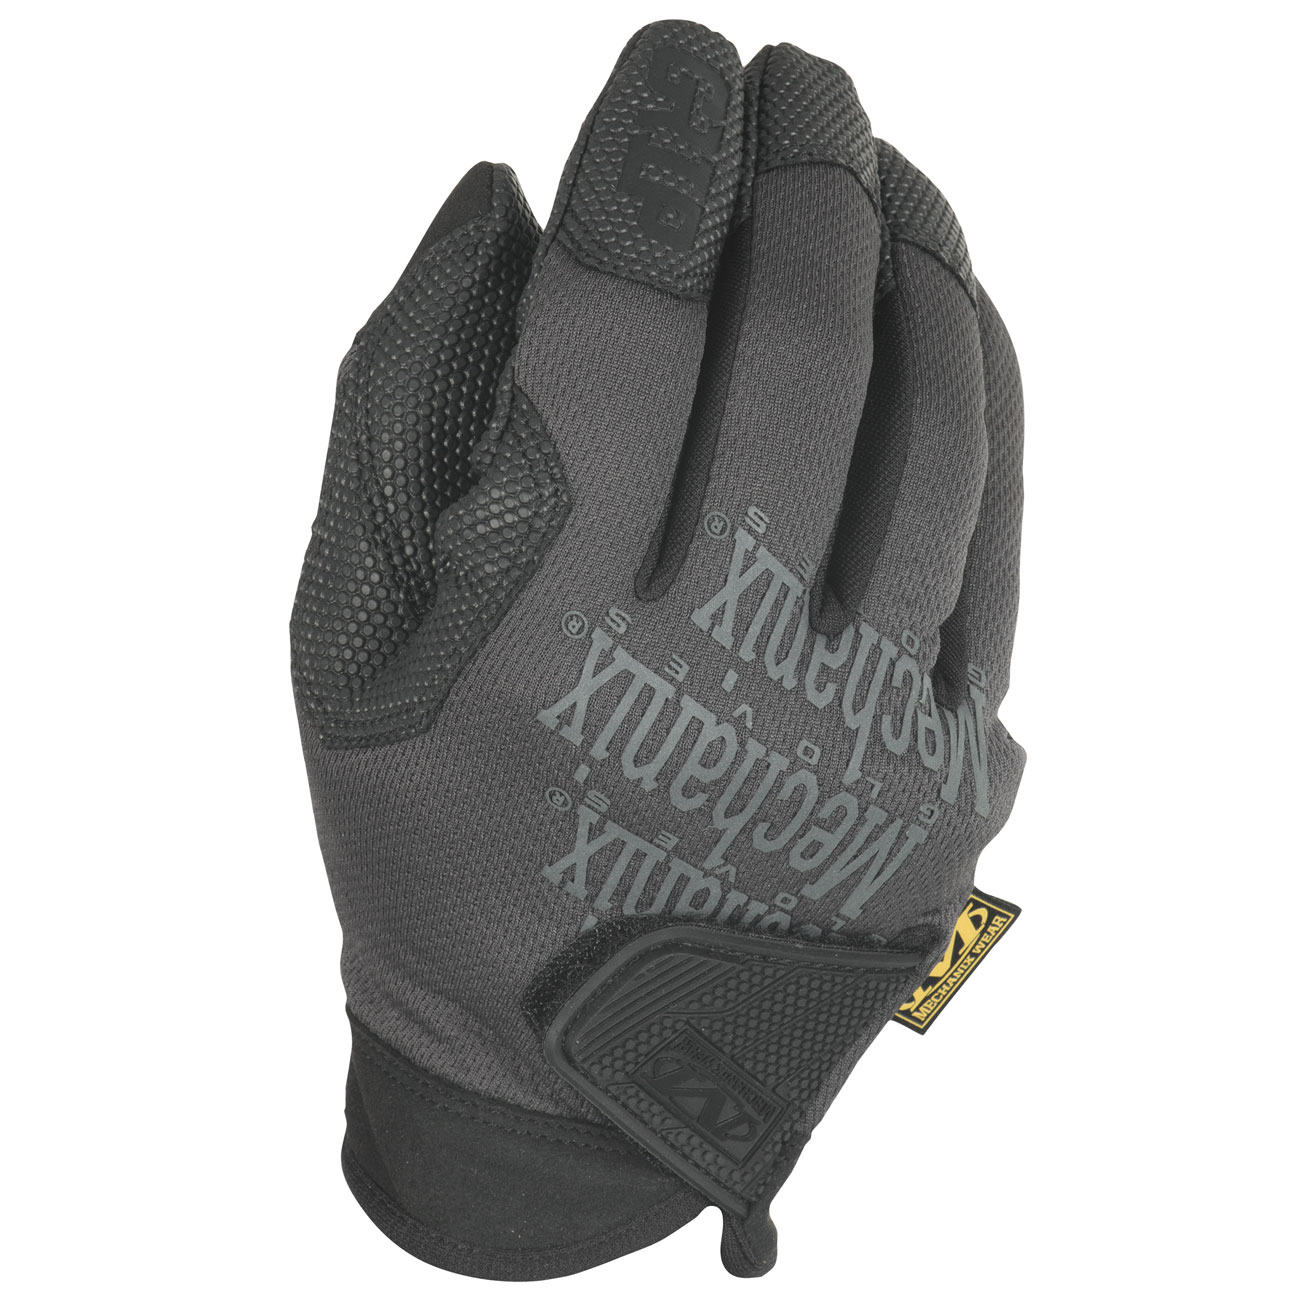 Mechanix Wear Handschuh Specialty Grip schwarz Bild 1